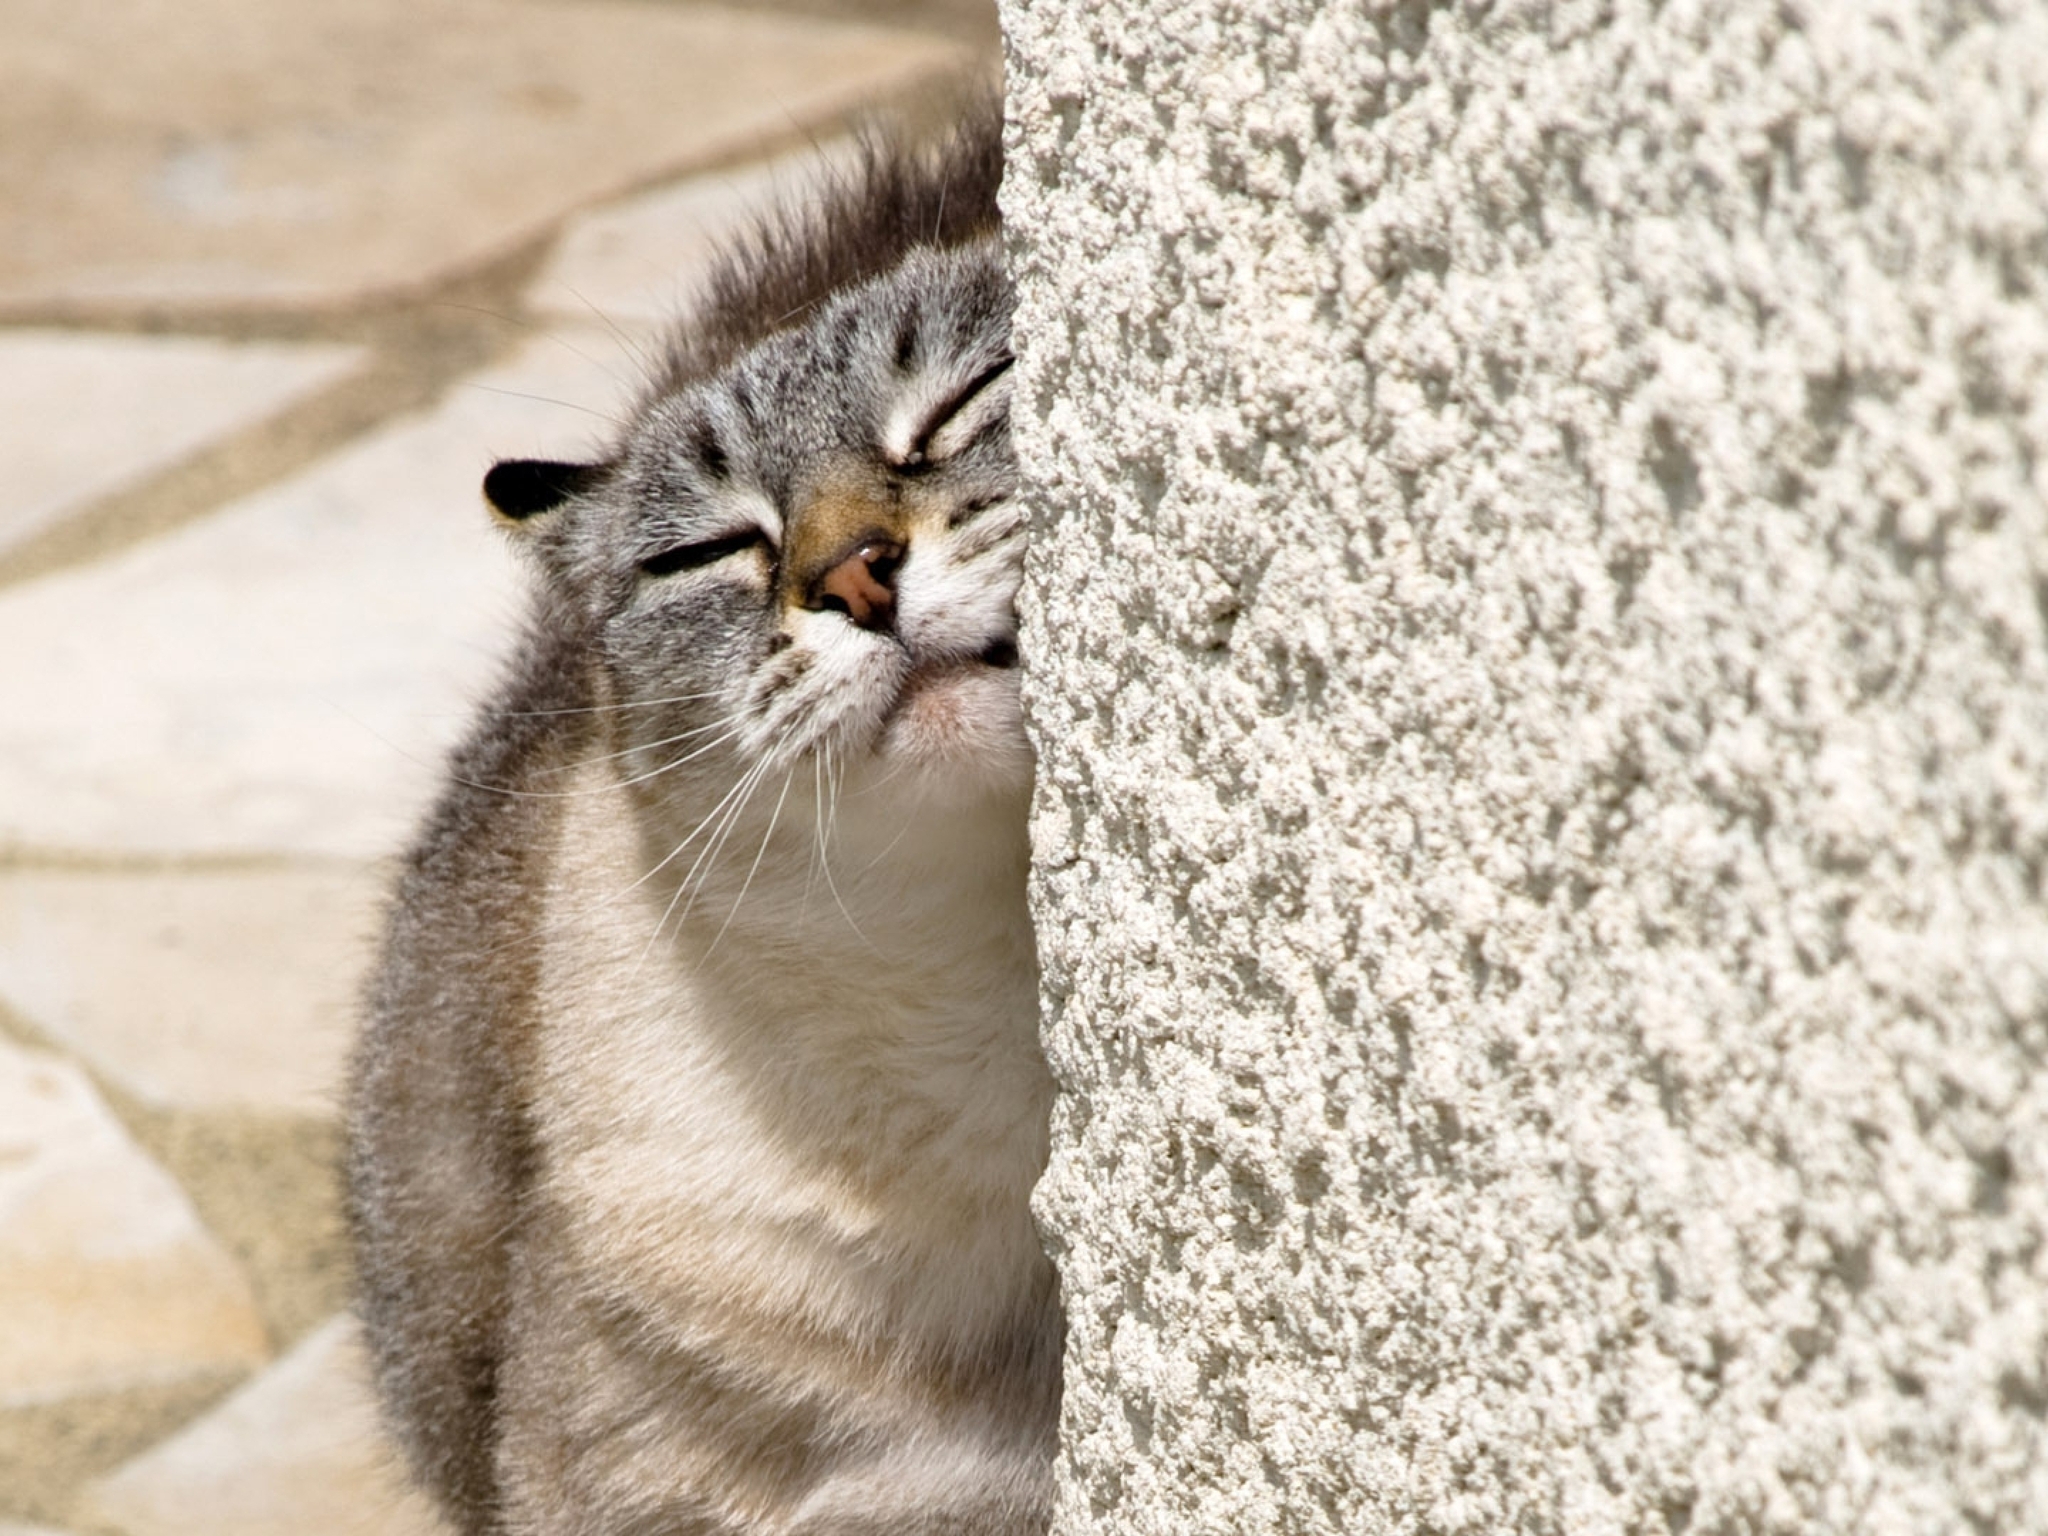 Картинка: Кот, кошка, морда, нос, шерсть, трётся, стена, камни